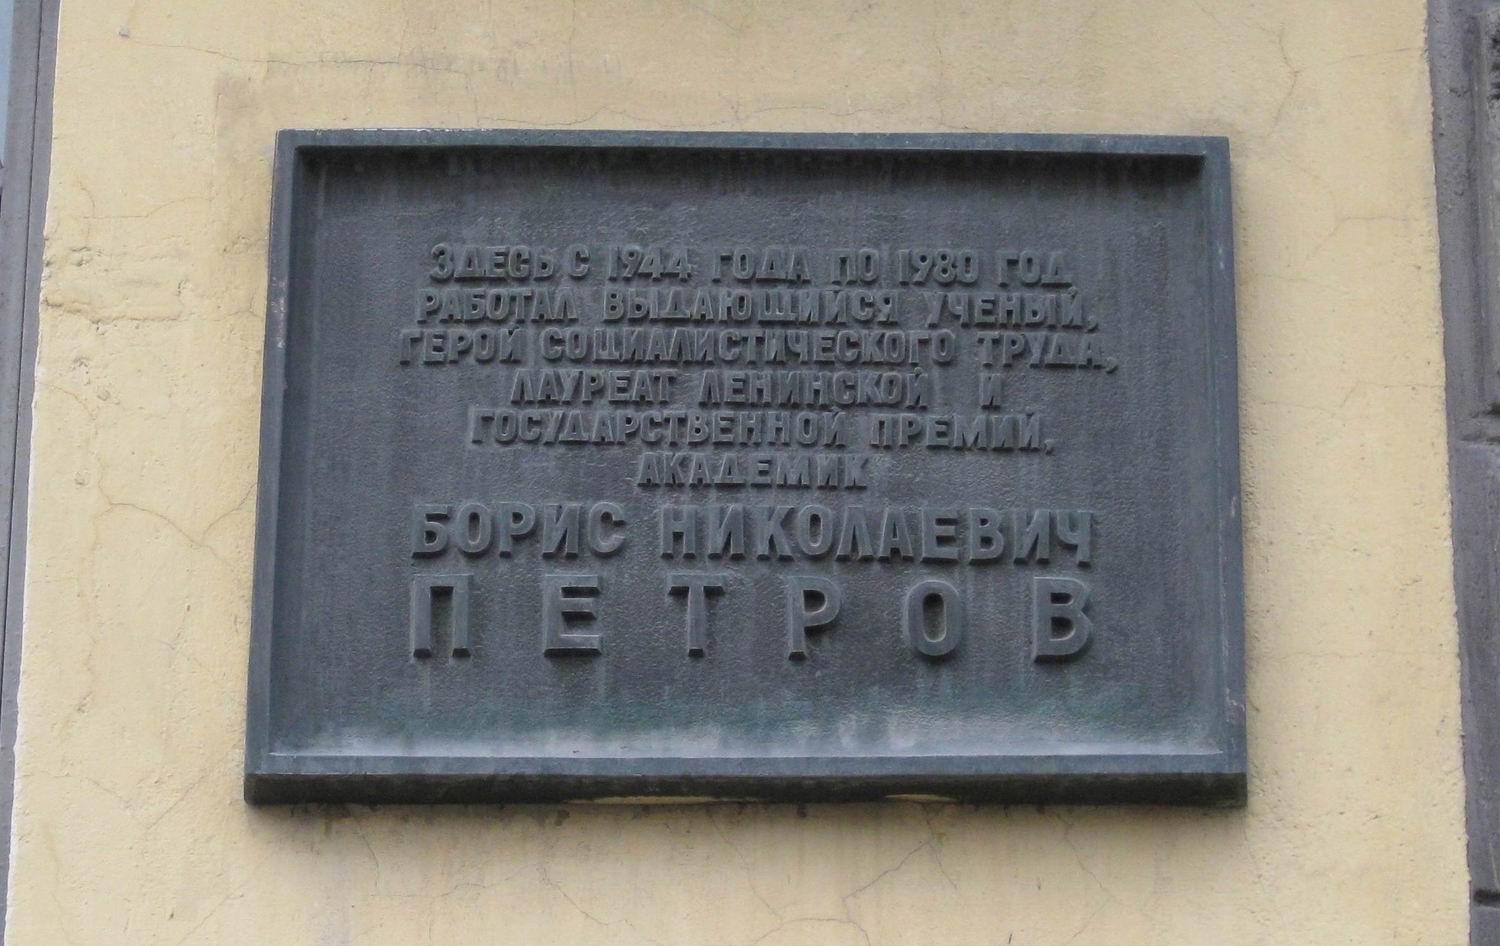 Мемориальная доска Петрову Б.Н. (1913–1980), арх. С.П.Дмитренко, на Волоколамском шоссе, дом 4, открыта 4.2.1983.